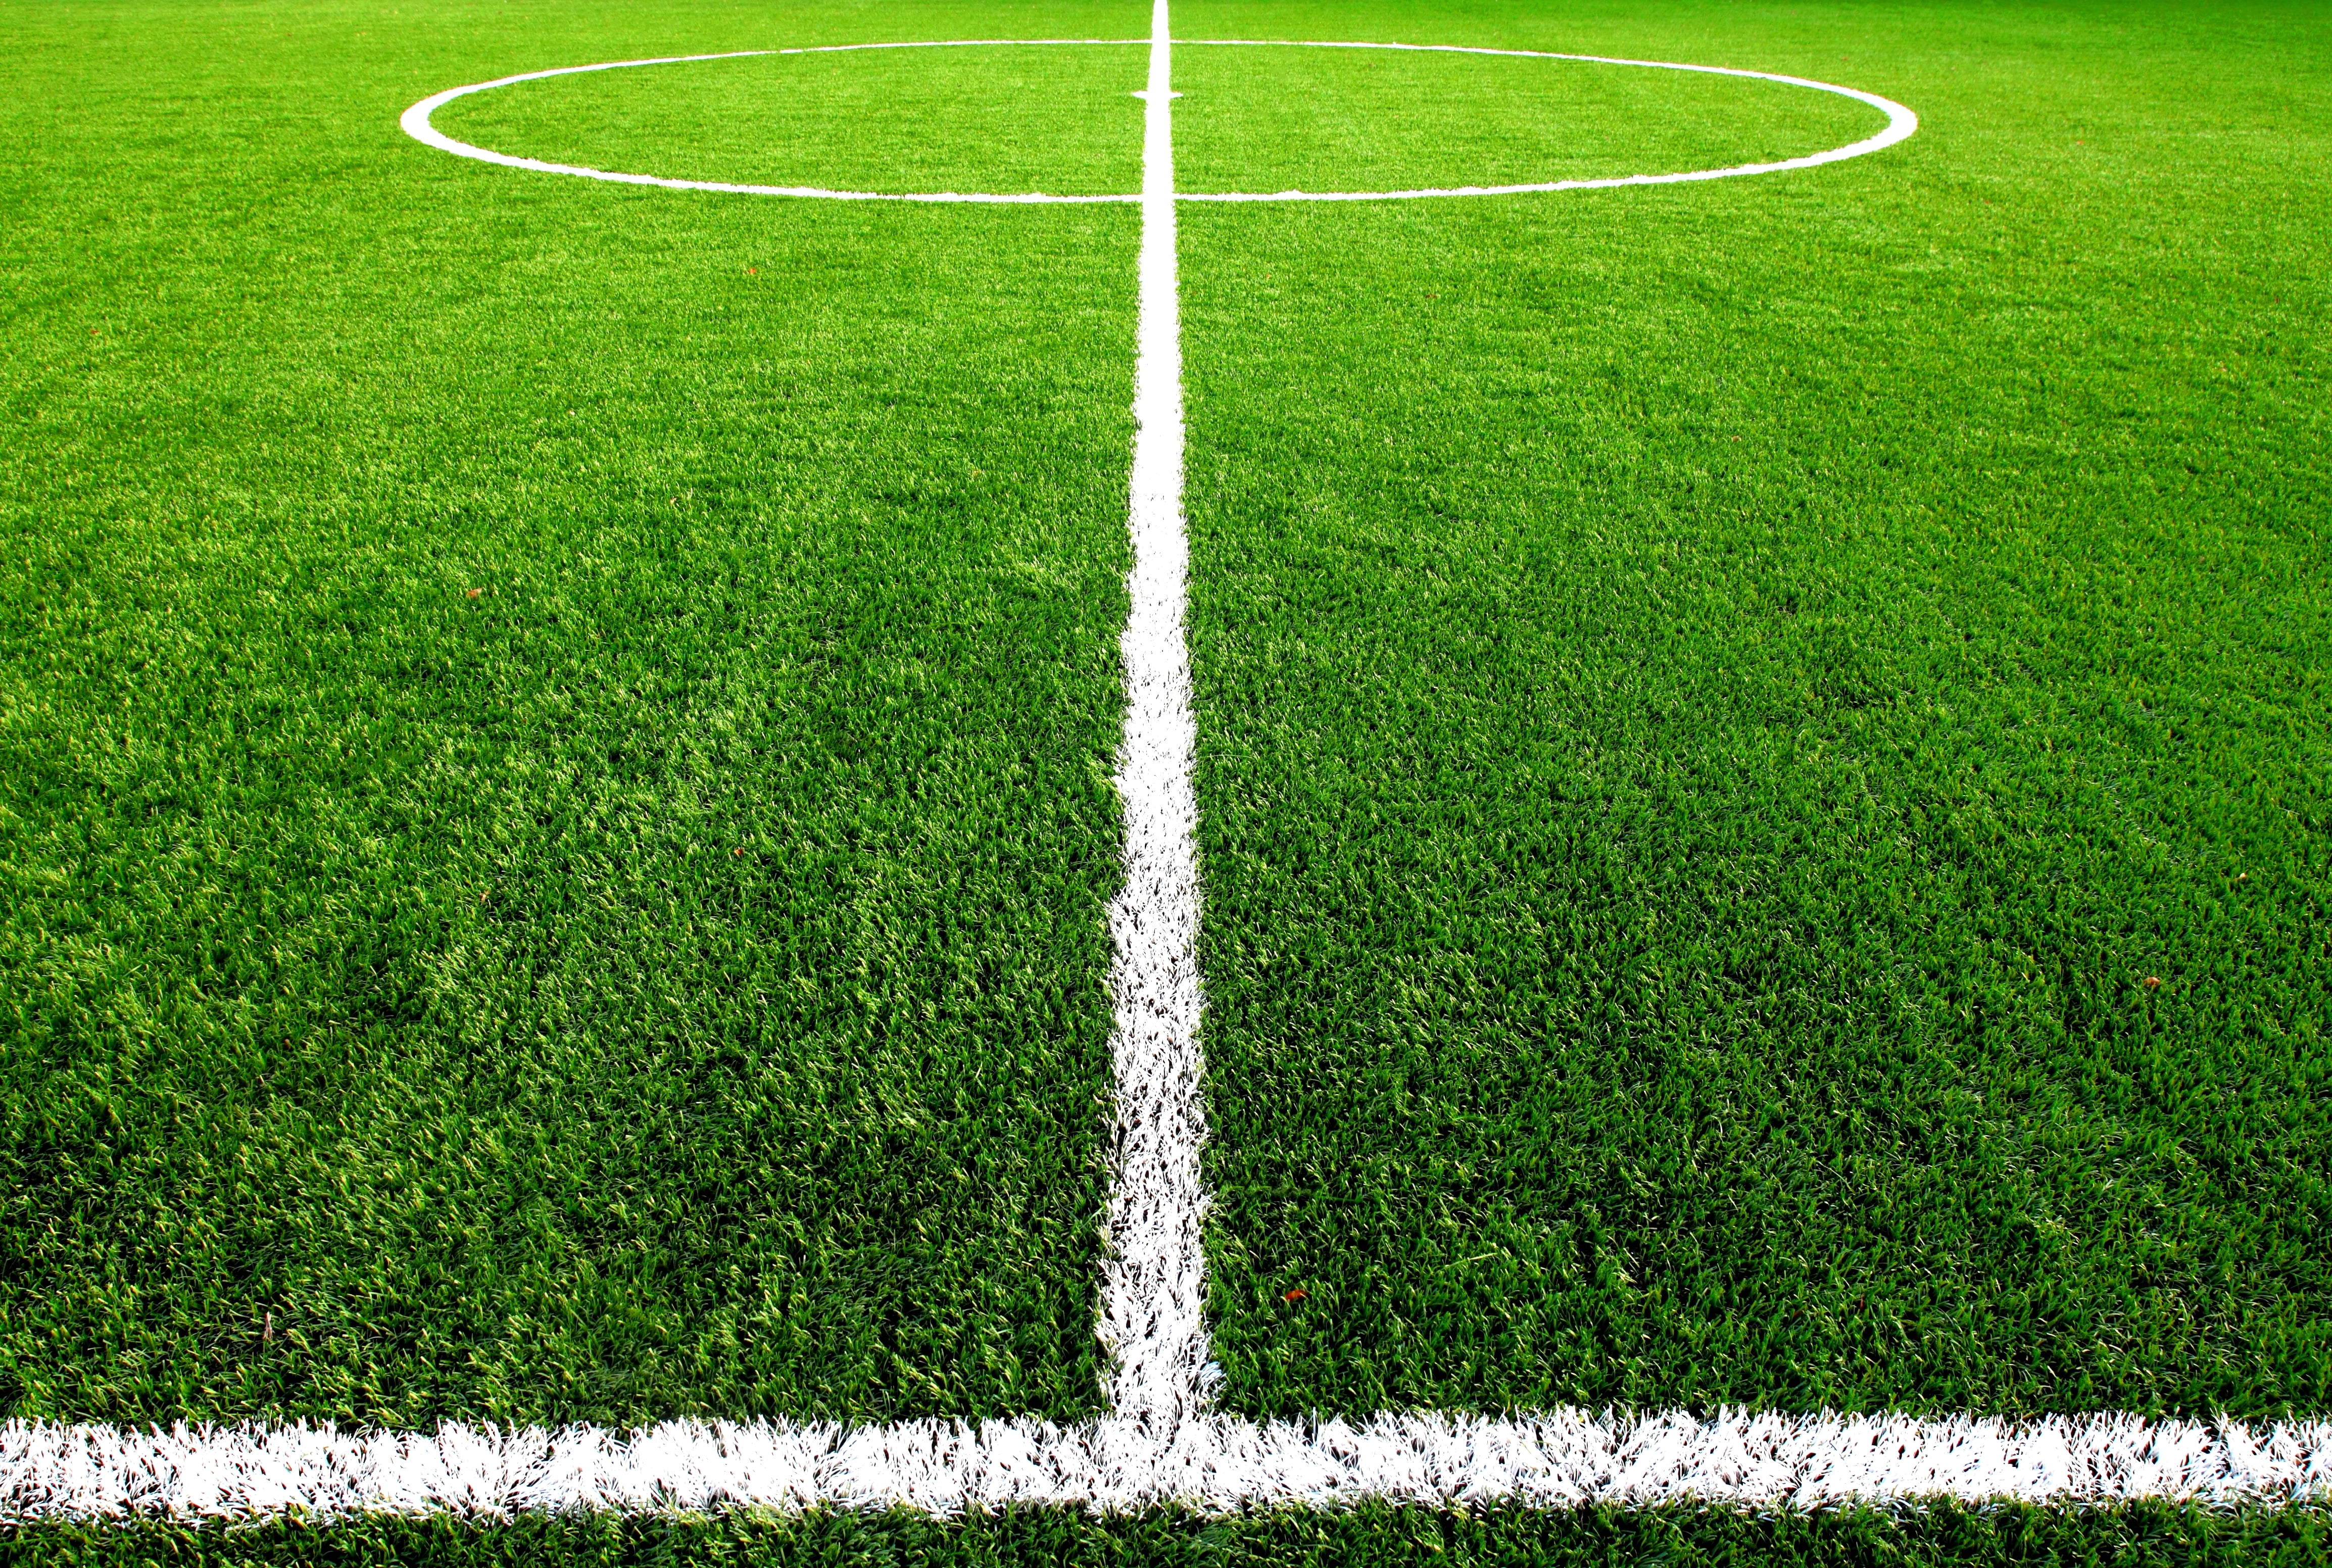 green soccer field, grass, markup, lawn, football, center, sport